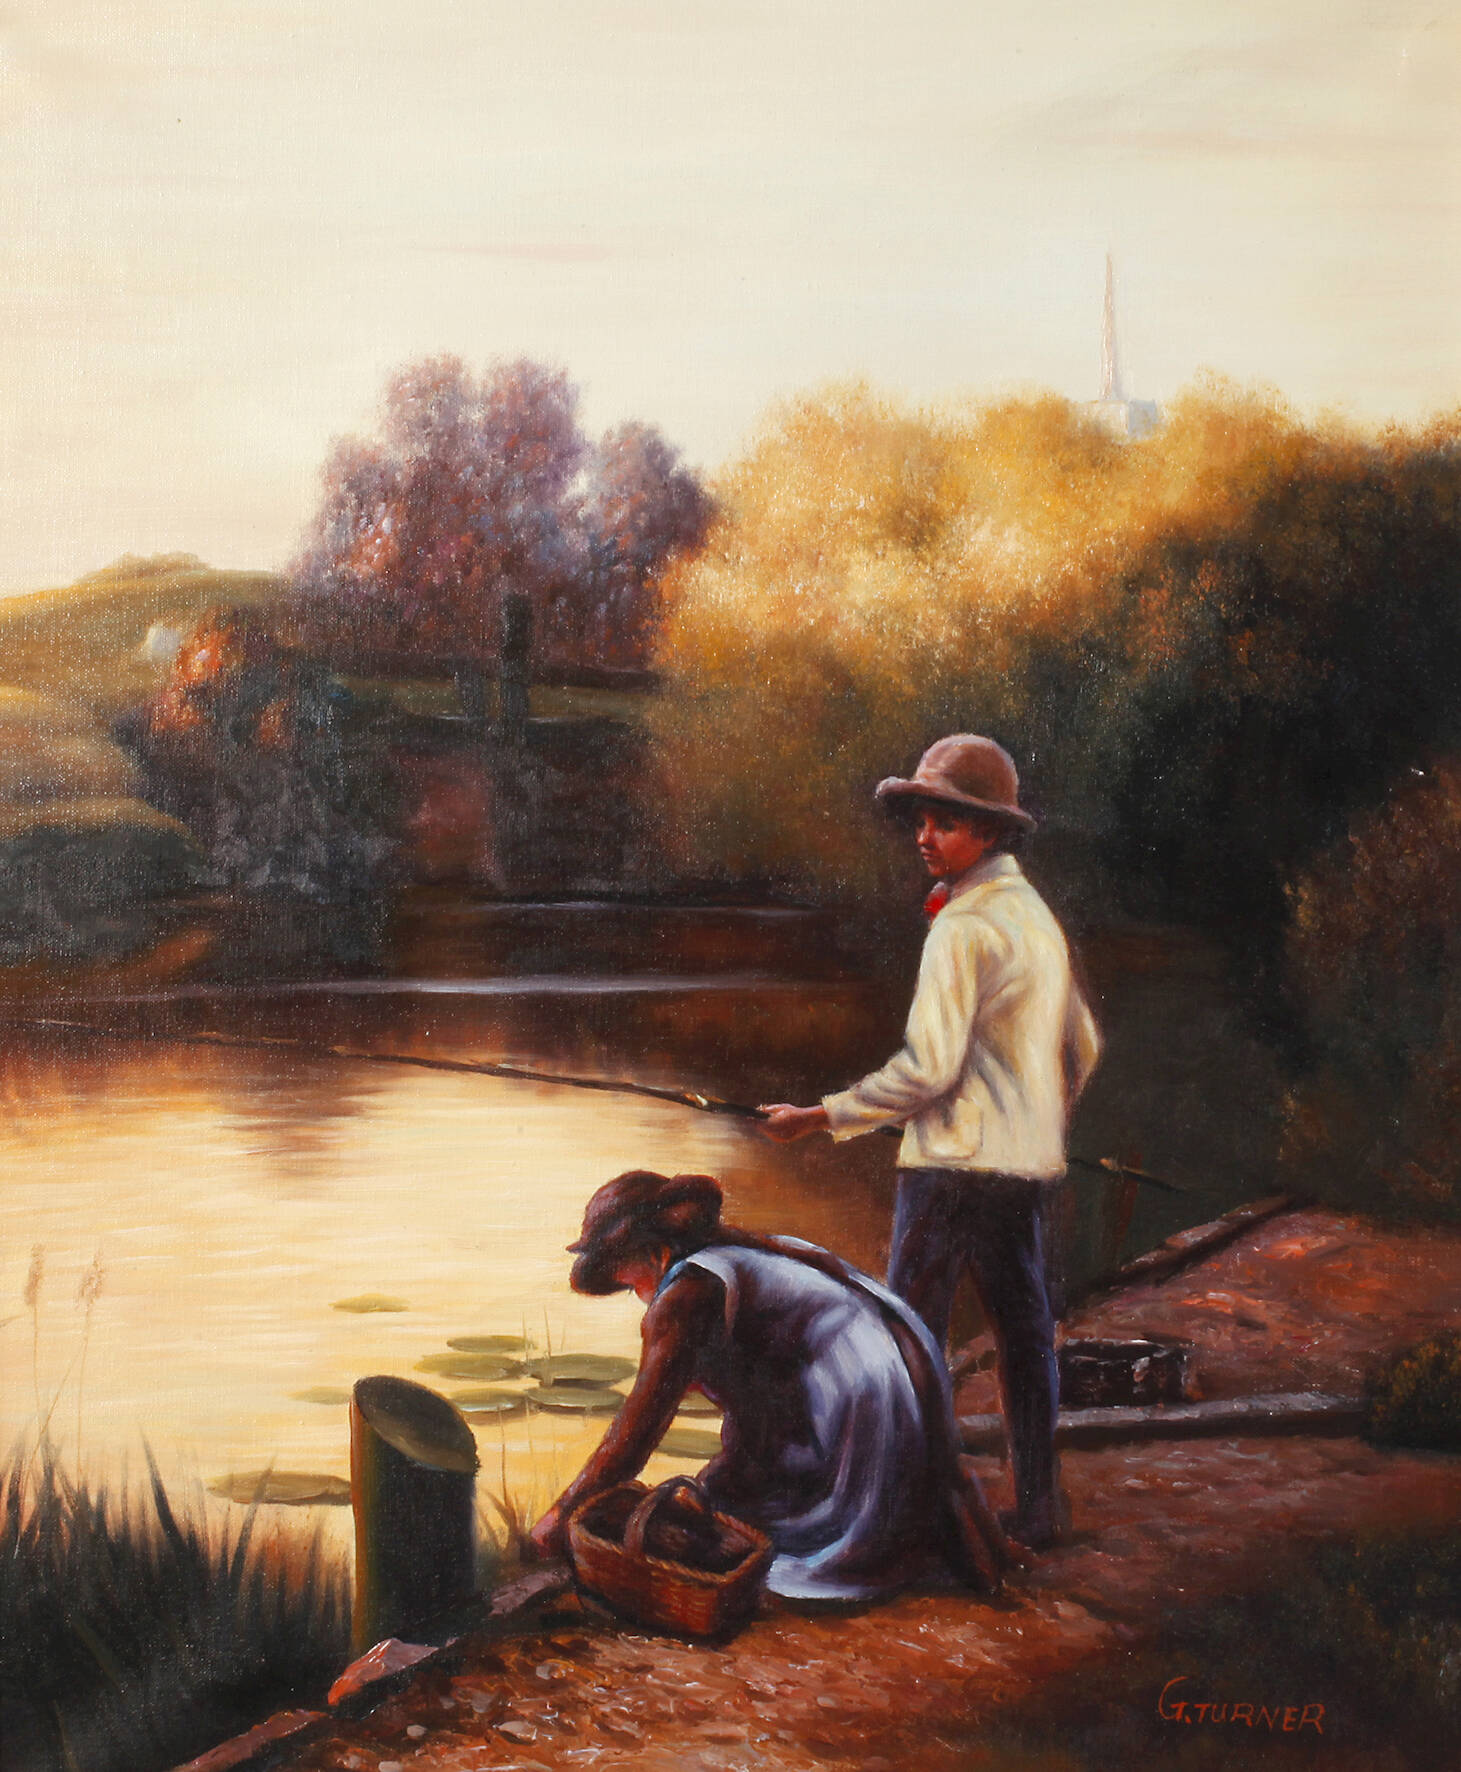 G. Turner, Kinder am Fluss